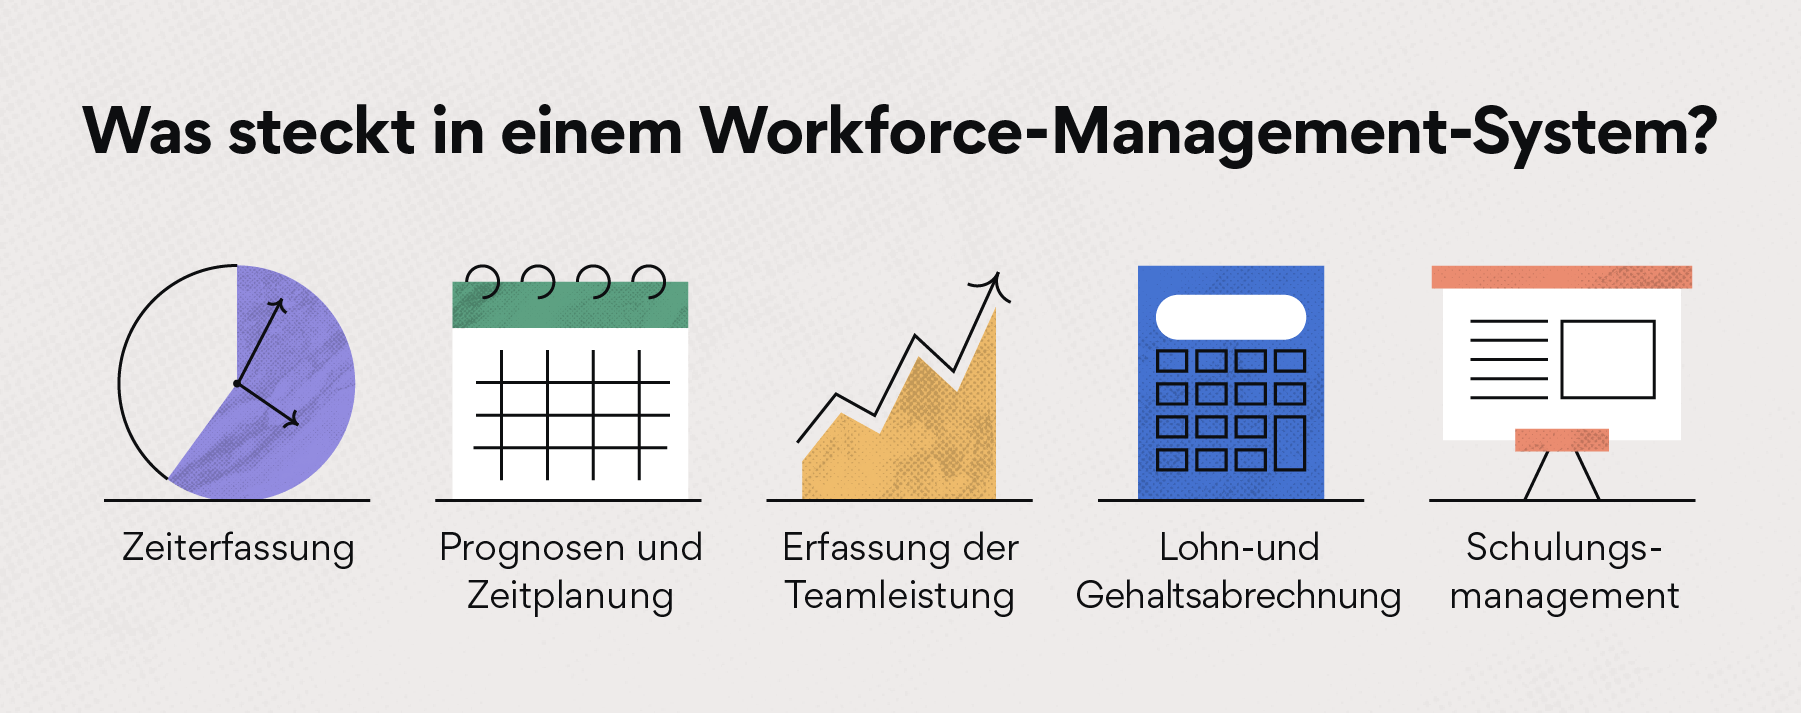 Was steckt in einem Workforce-Management-System?